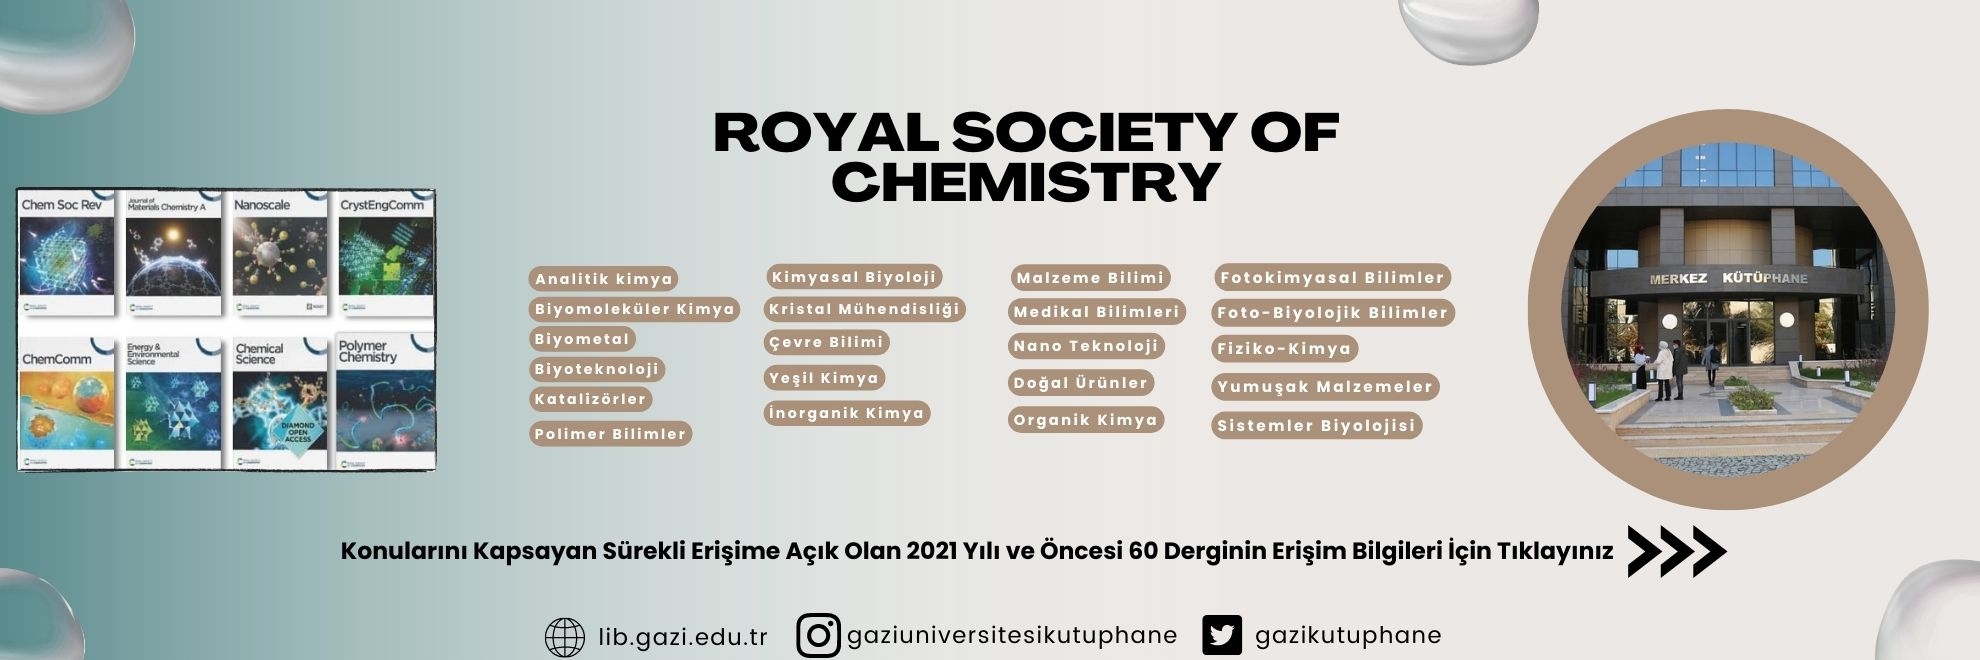 Royal Society of Chemistry